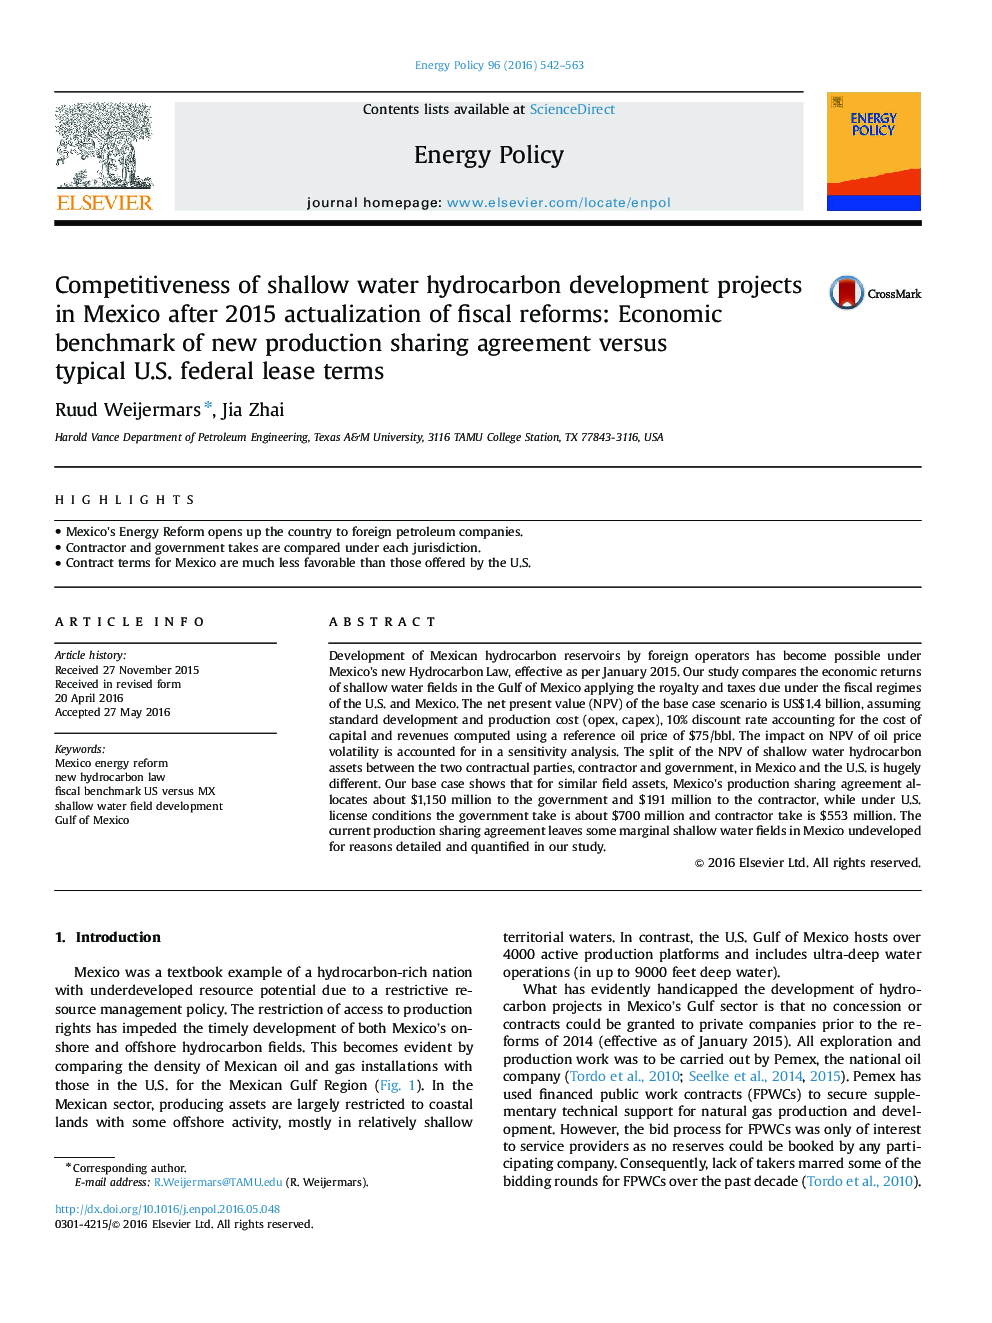 رقابت در پروژه های توسعه هیدروکربن آب کم عمق در مکزیک پس از 2015 اصلاح اصلاحات مالی: معیار اقتصادی توافقنامه جدید به اشتراک گذاری تولید در مقایسه با شرایط اجاره نامه فدرال ایالات متحده 